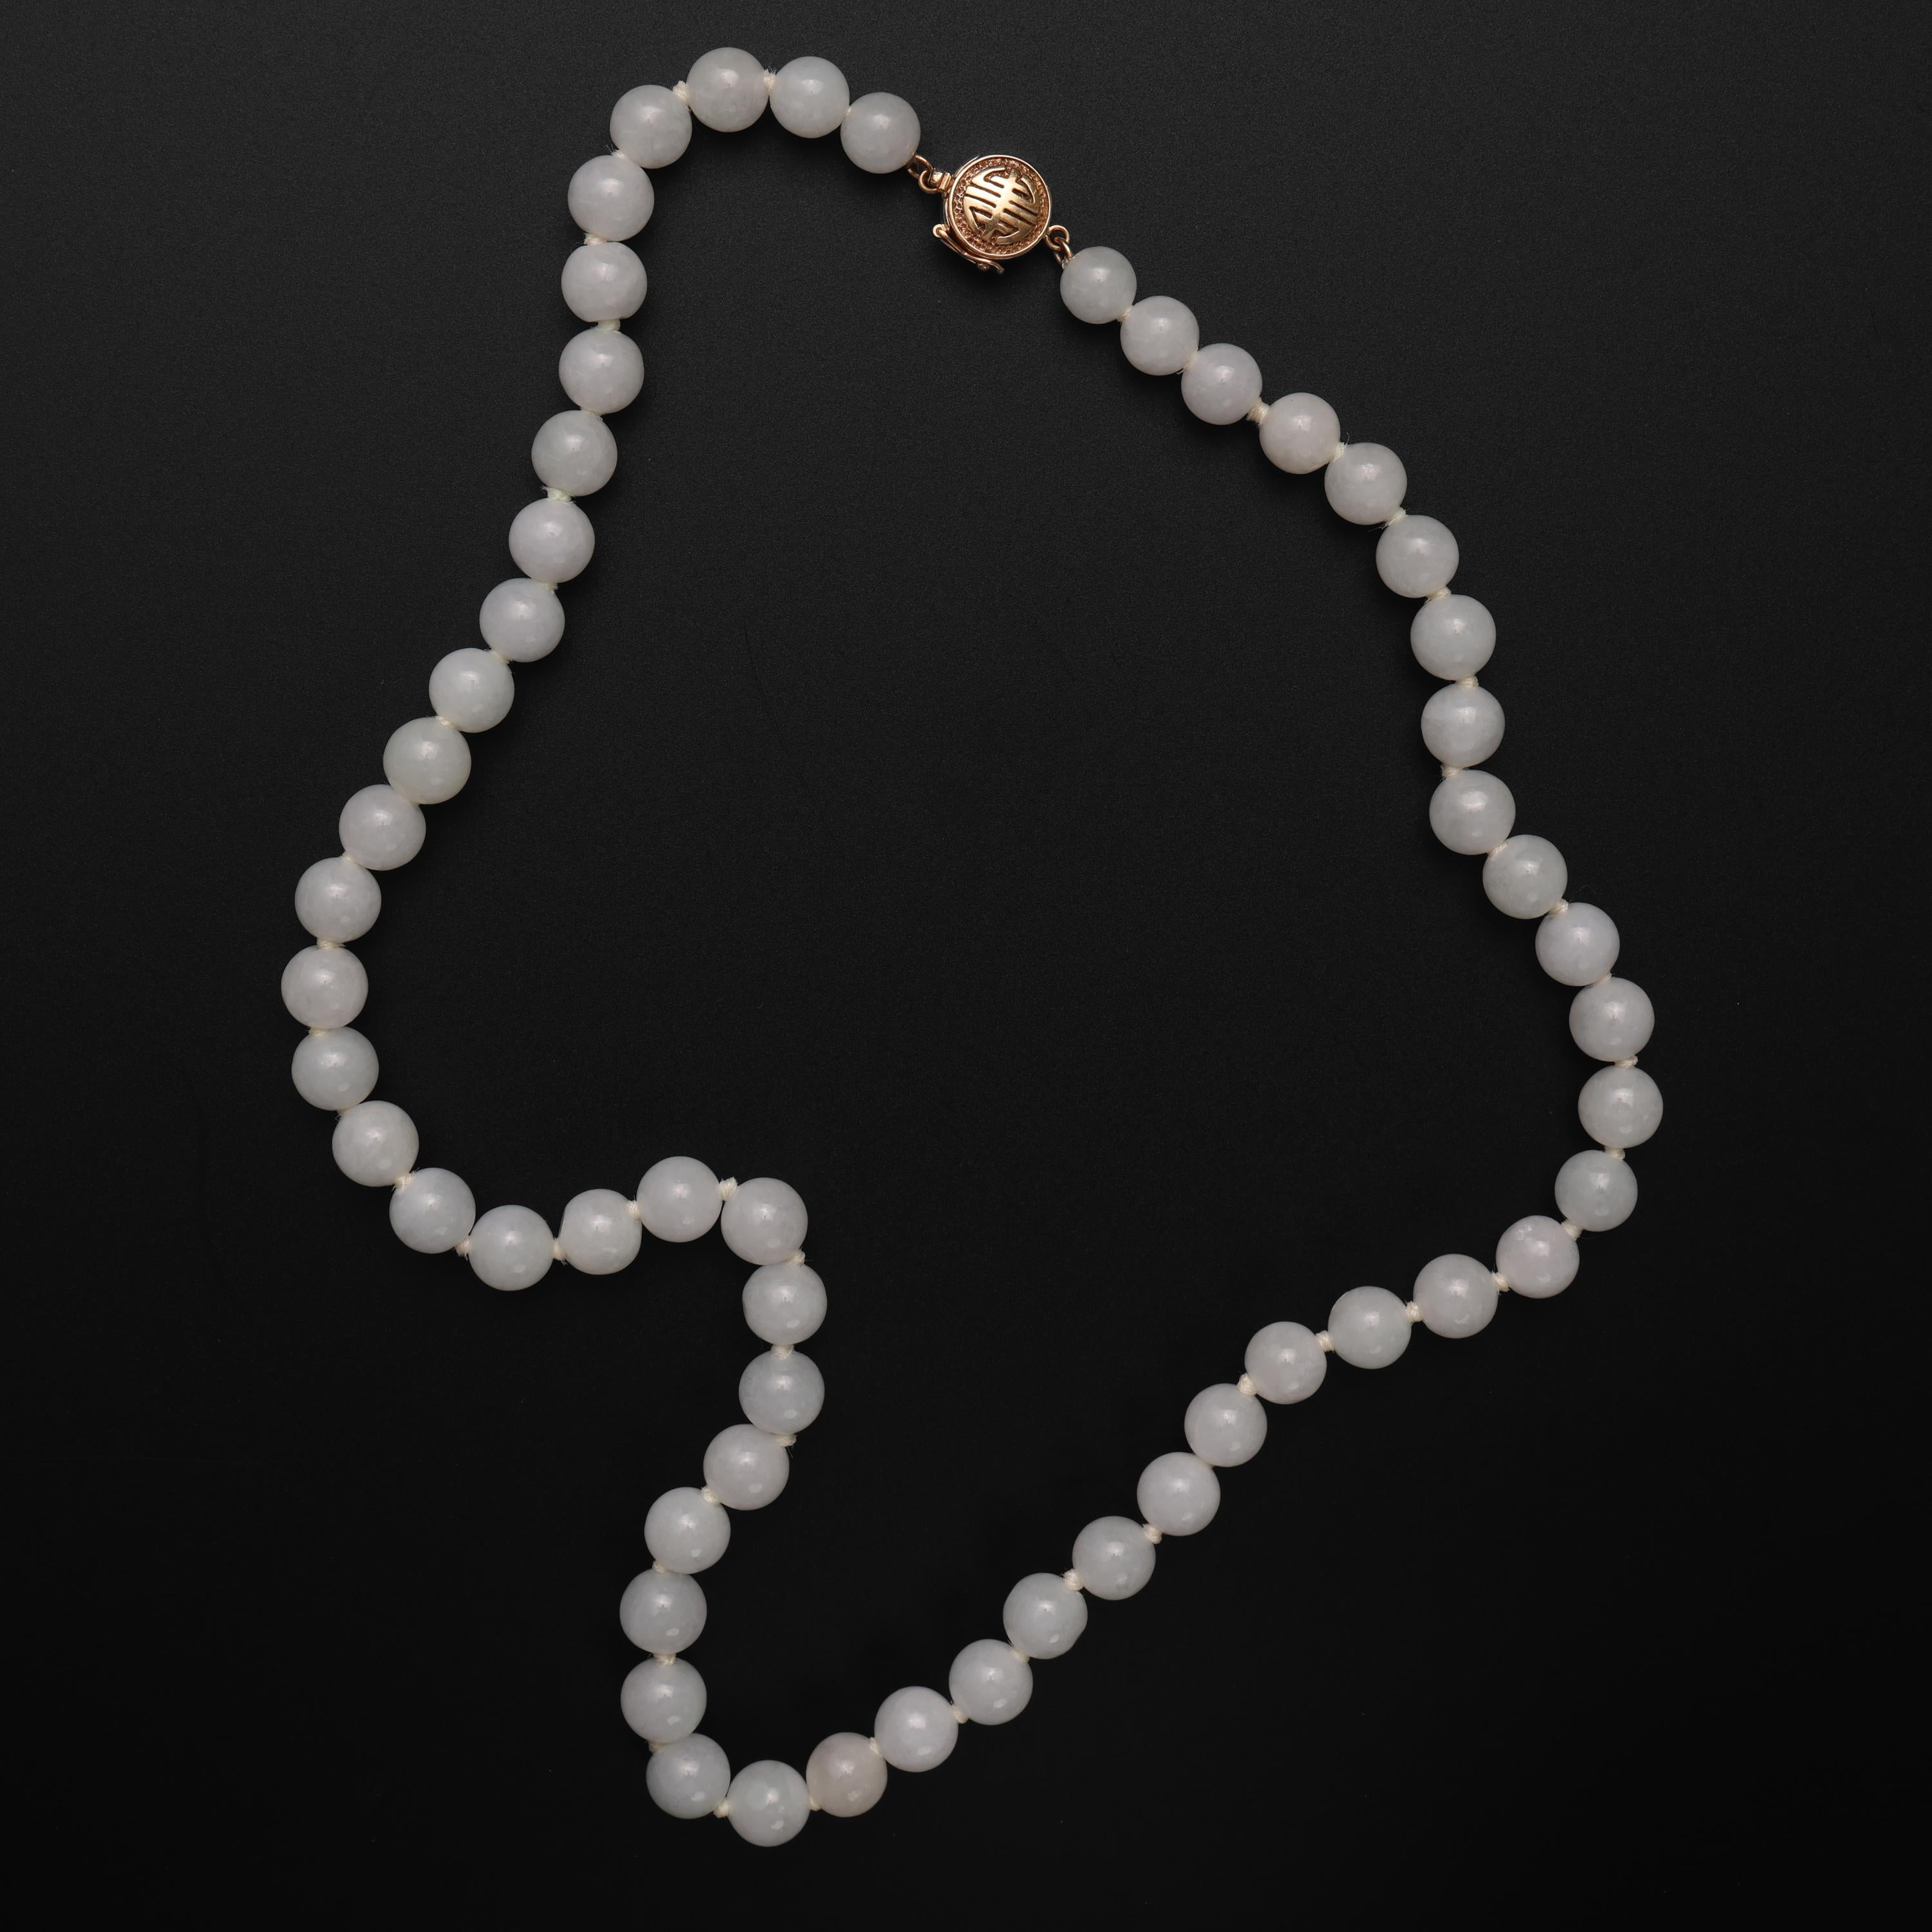 Les perles lumineuses de jadéite non traitée qui composent ce collier de 20 pouces sont d'un vert si clair qu'elles paraissent blanches. Enfin, pas blanches ; pas vraiment, car elles sont bien trop fascinantes pour être simplement blanches comme une